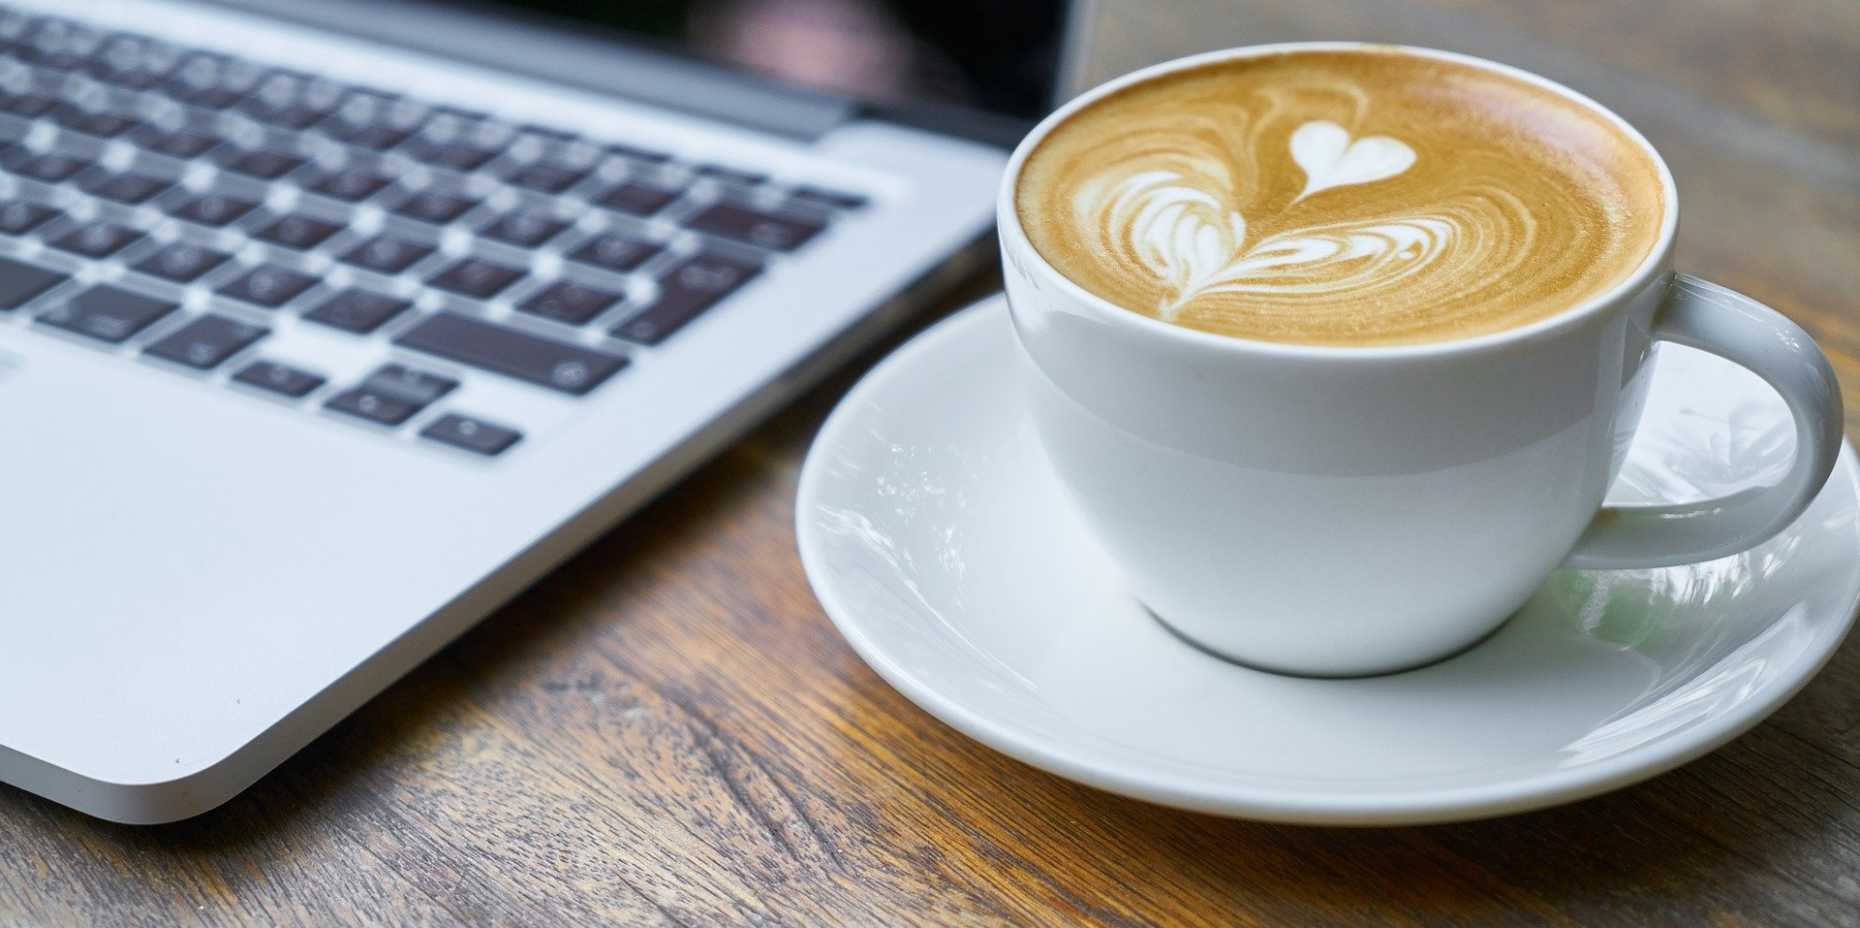 Kaffee neben MacBook auf Holztisch